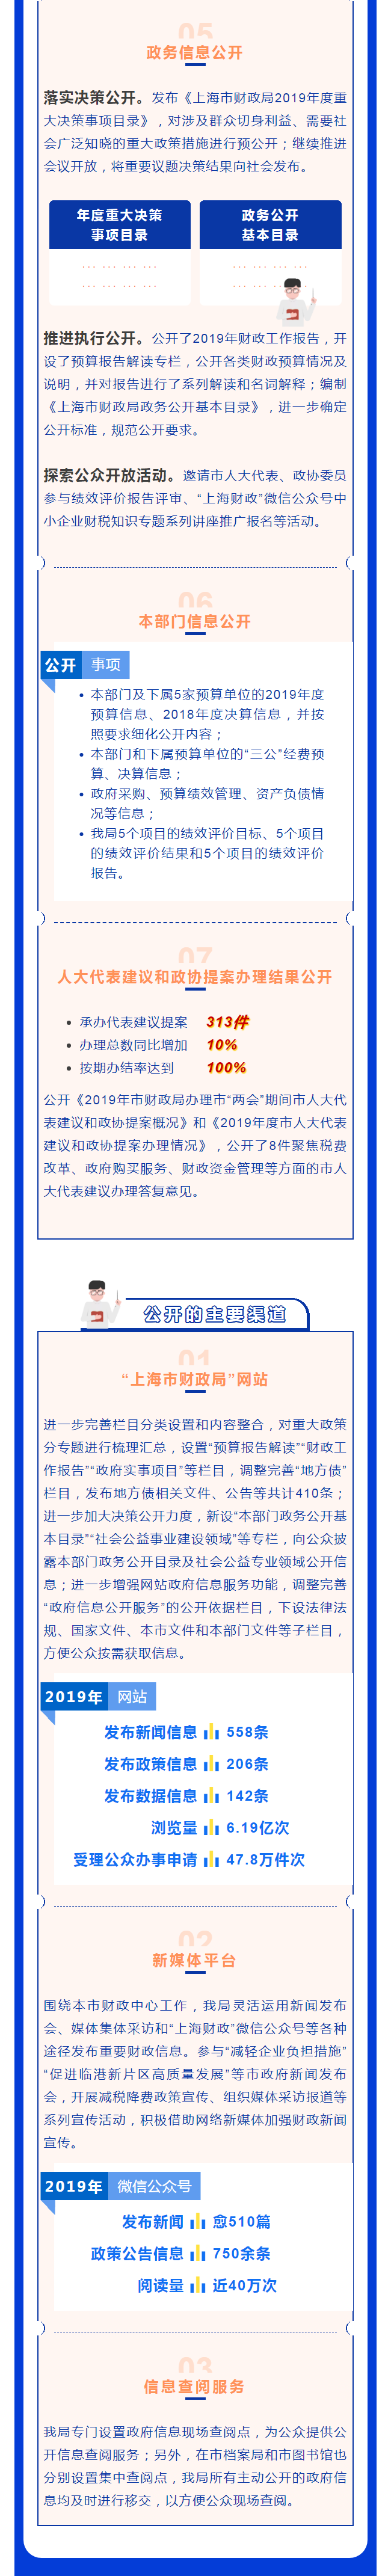 2019年上海市财政局政府信息公开工作年度报告-图解3.png